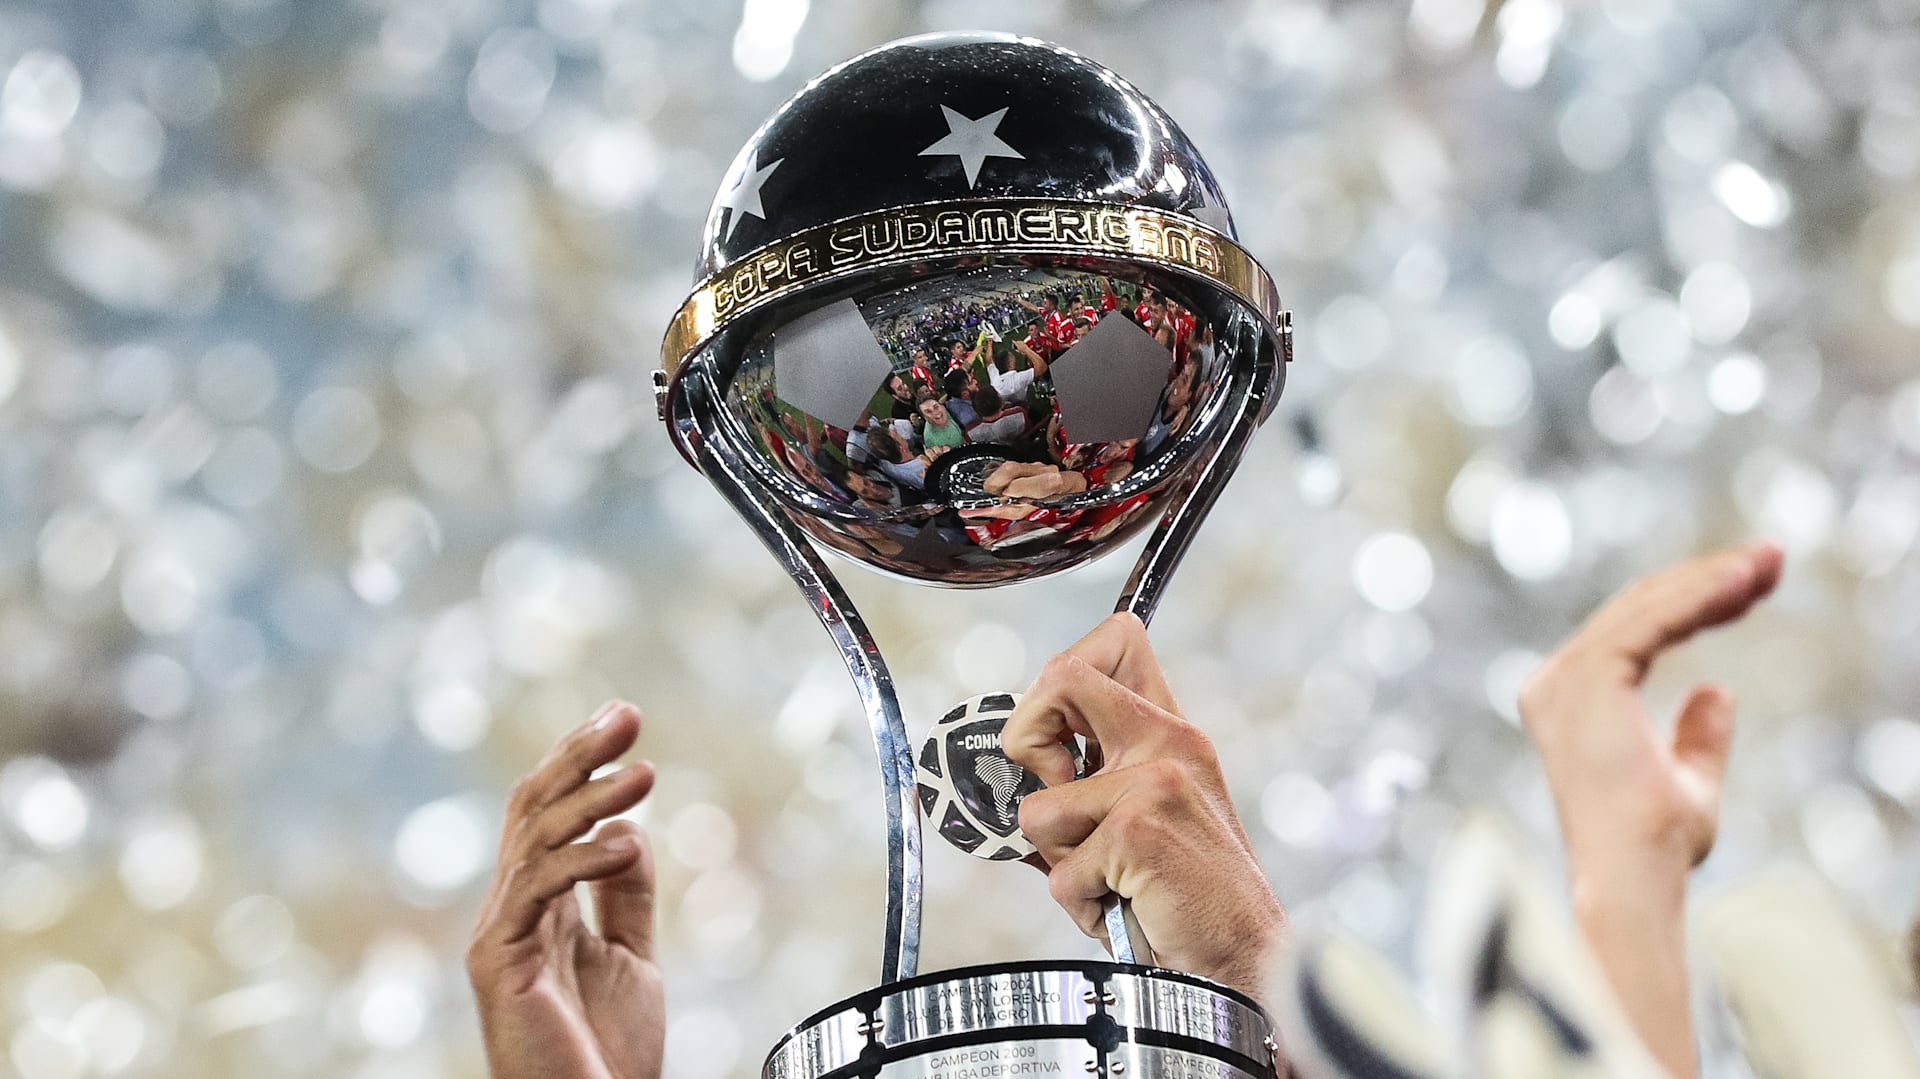 Playoffs da Sul-Americana 2023: times que jogam, quando é, onde assistir,  regulamento e mais